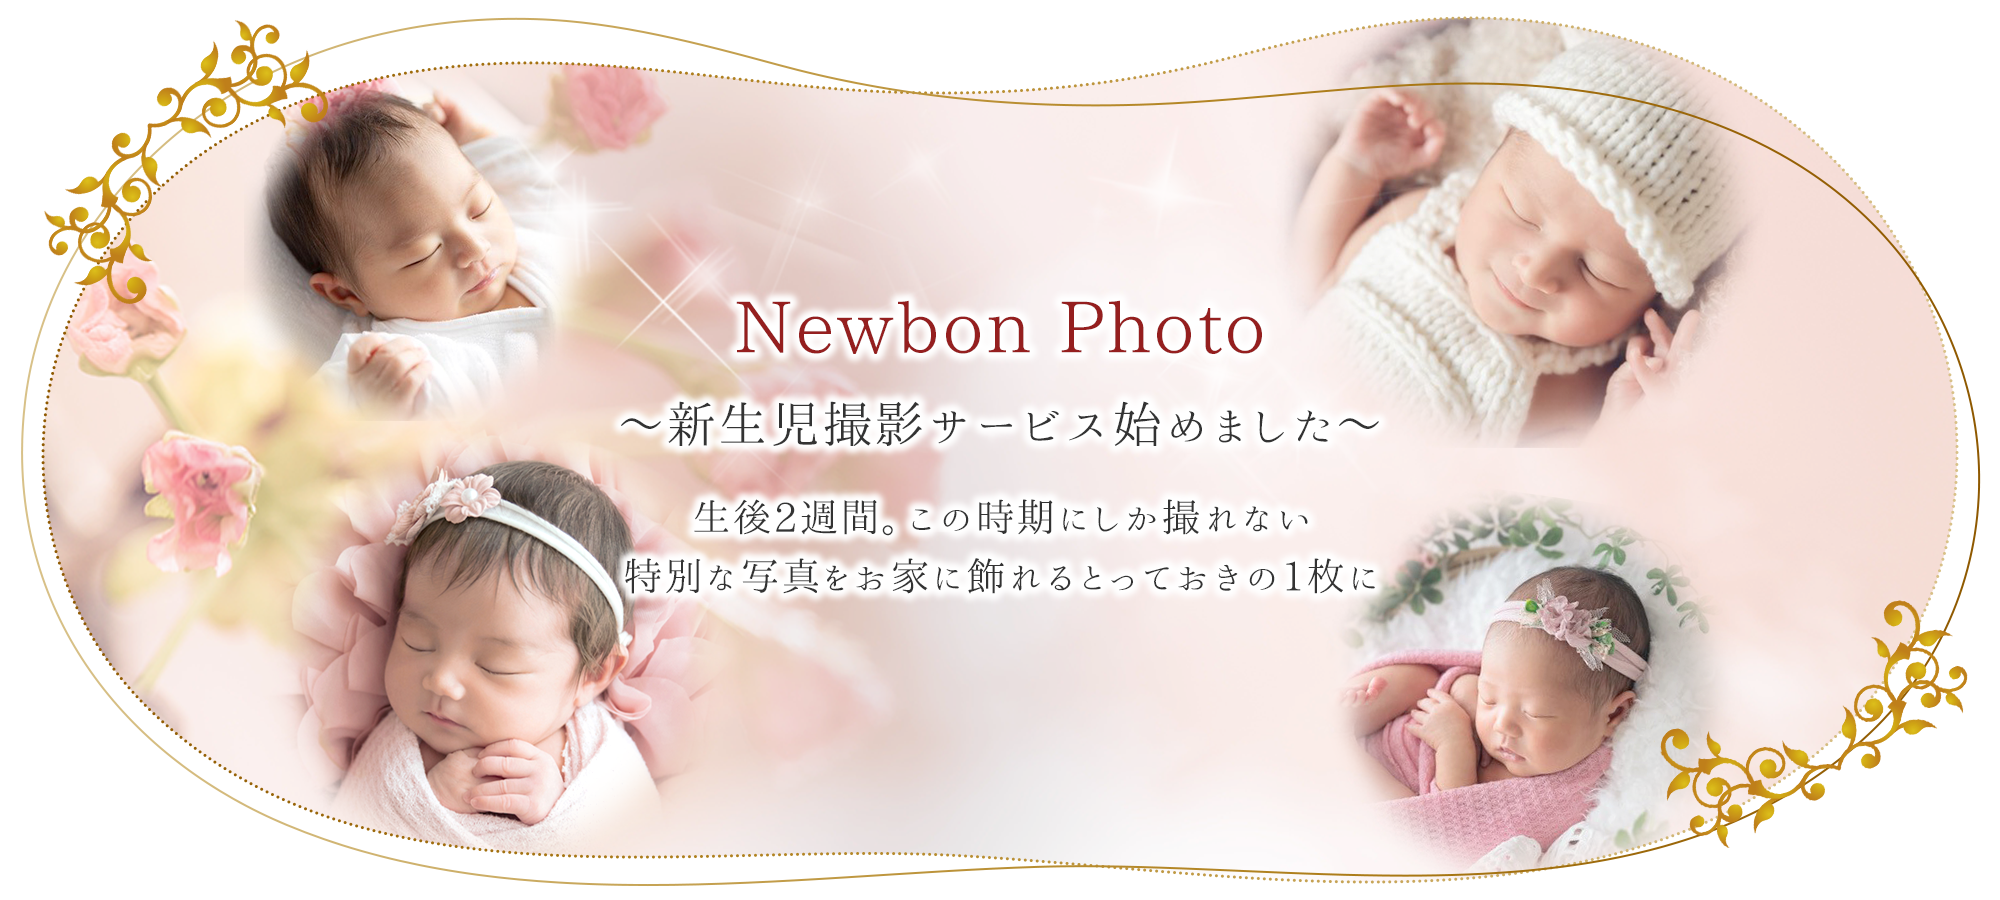 Newbon Photo